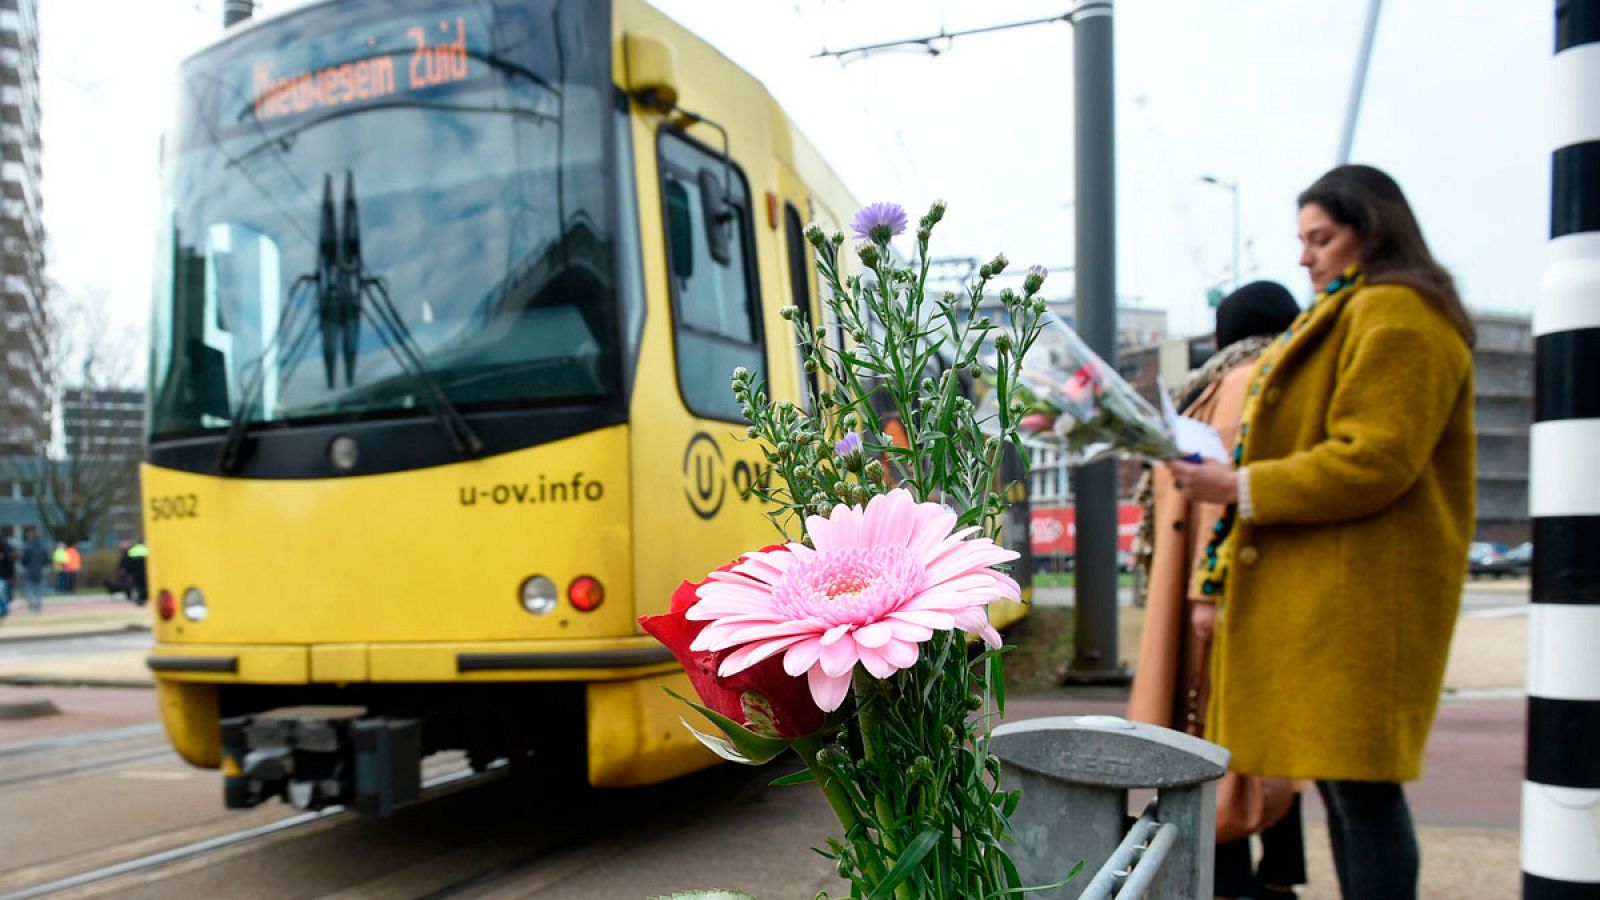 Flores en el tranvía de Utrecht como homenaje a las tres víctimas del atentado